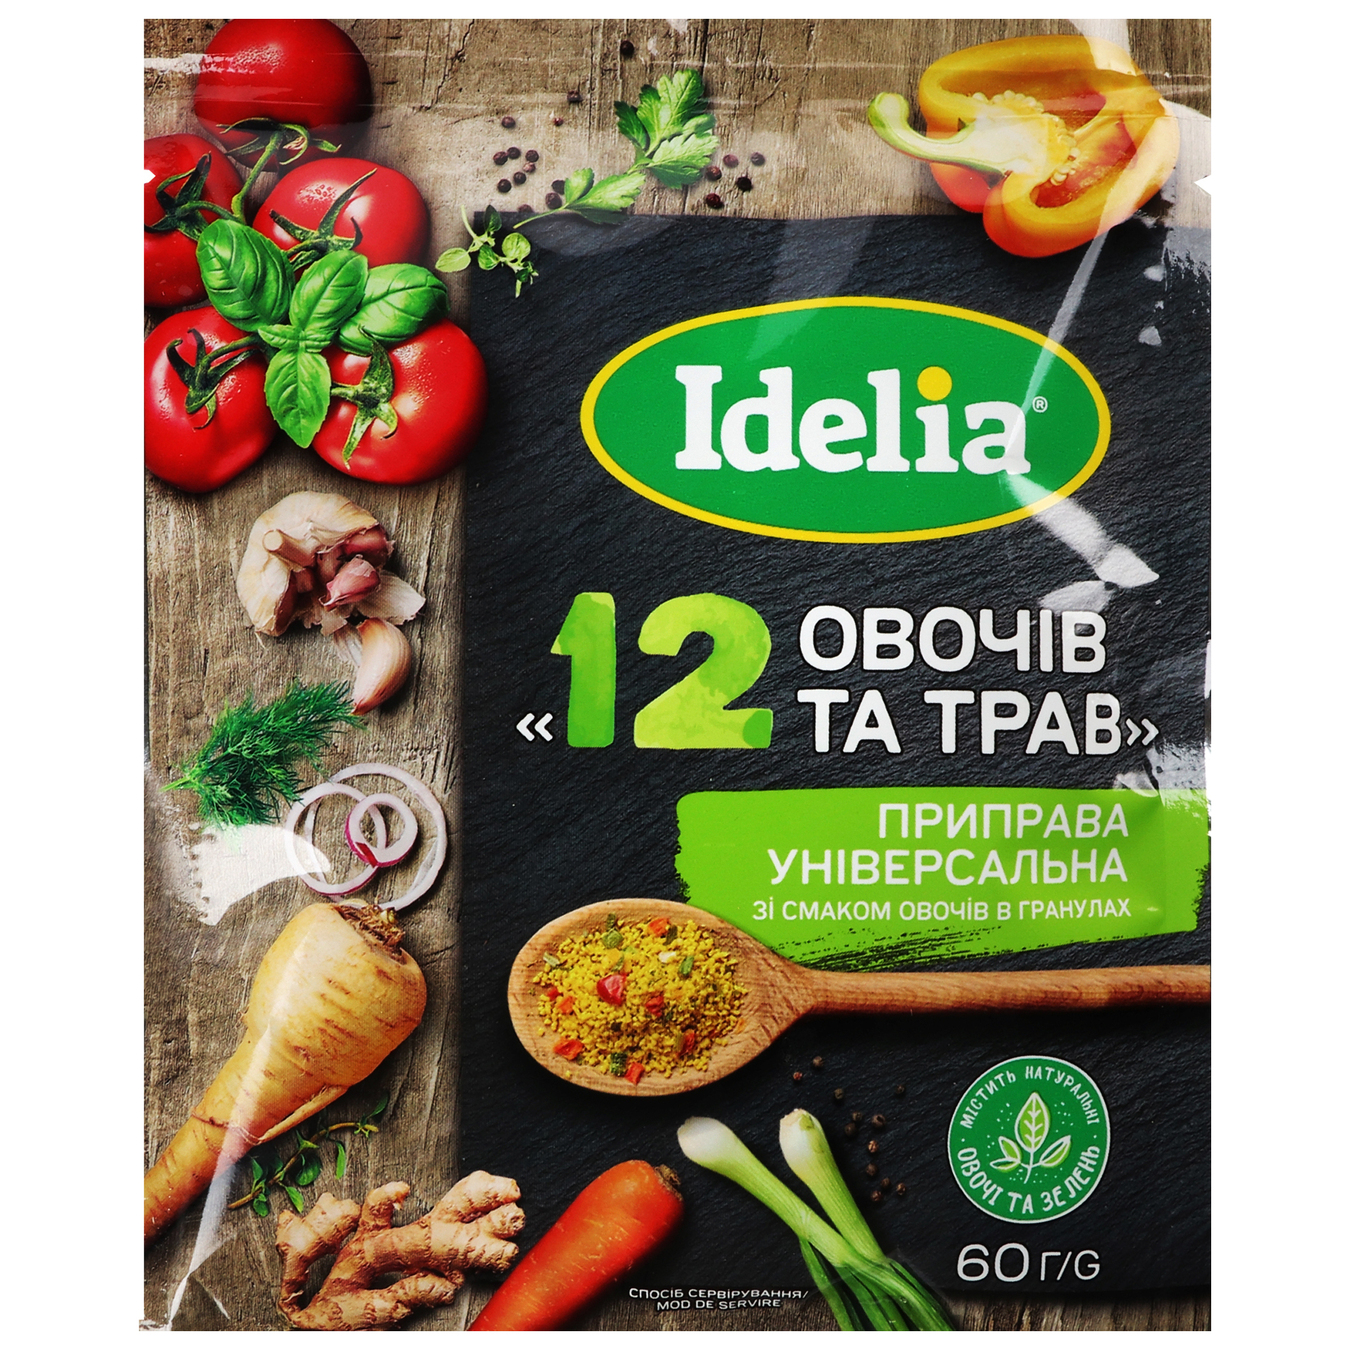 Приправа Idelia універсальна гранульована зі смаком овочів 12 овочів та трав 60г